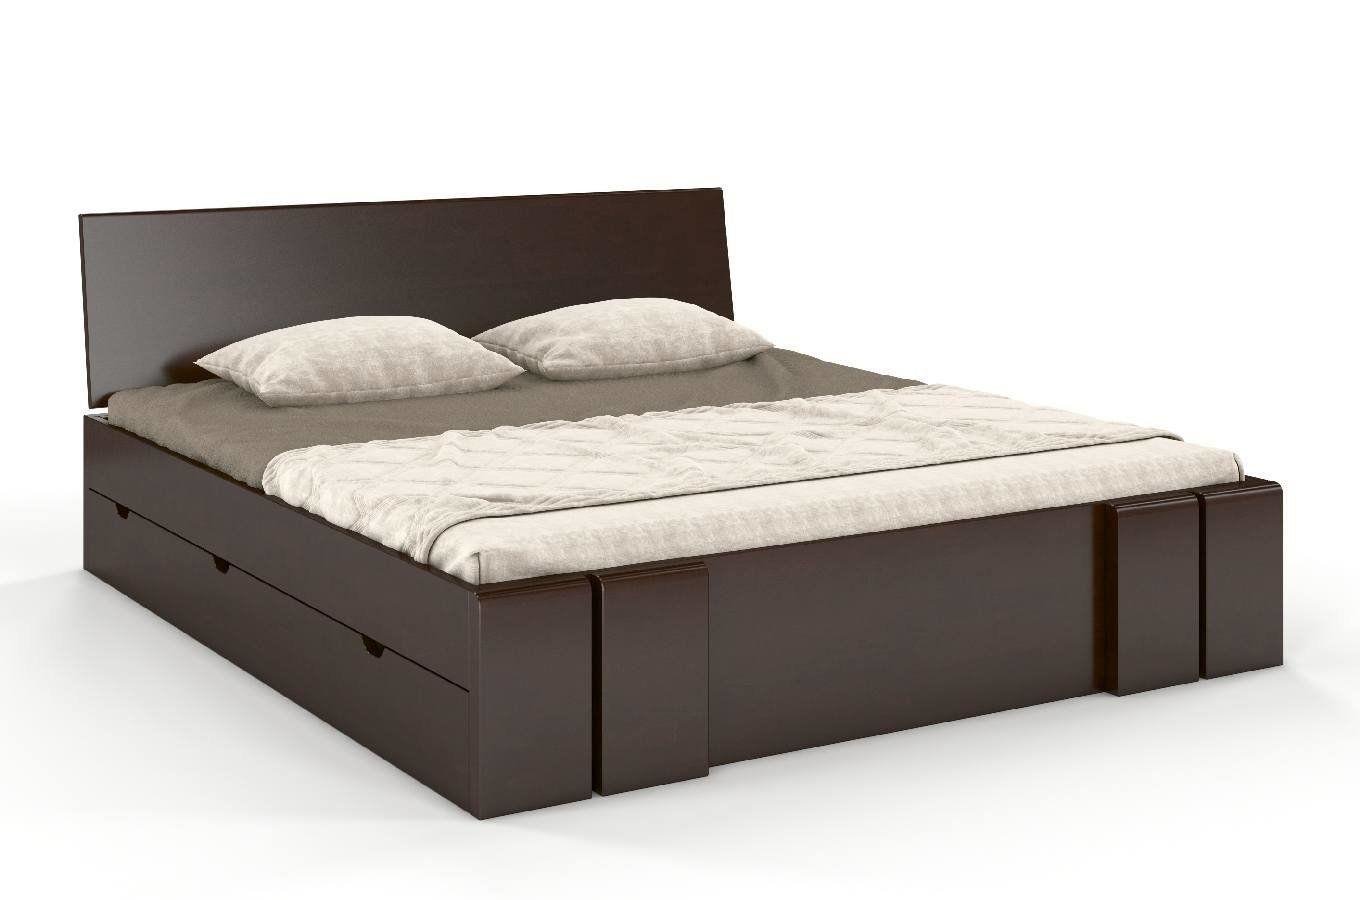 Łóżko drewniane bukowe z szufladami Skandica VESTRE Maxi & DR / 200x200 cm, kolor palisander